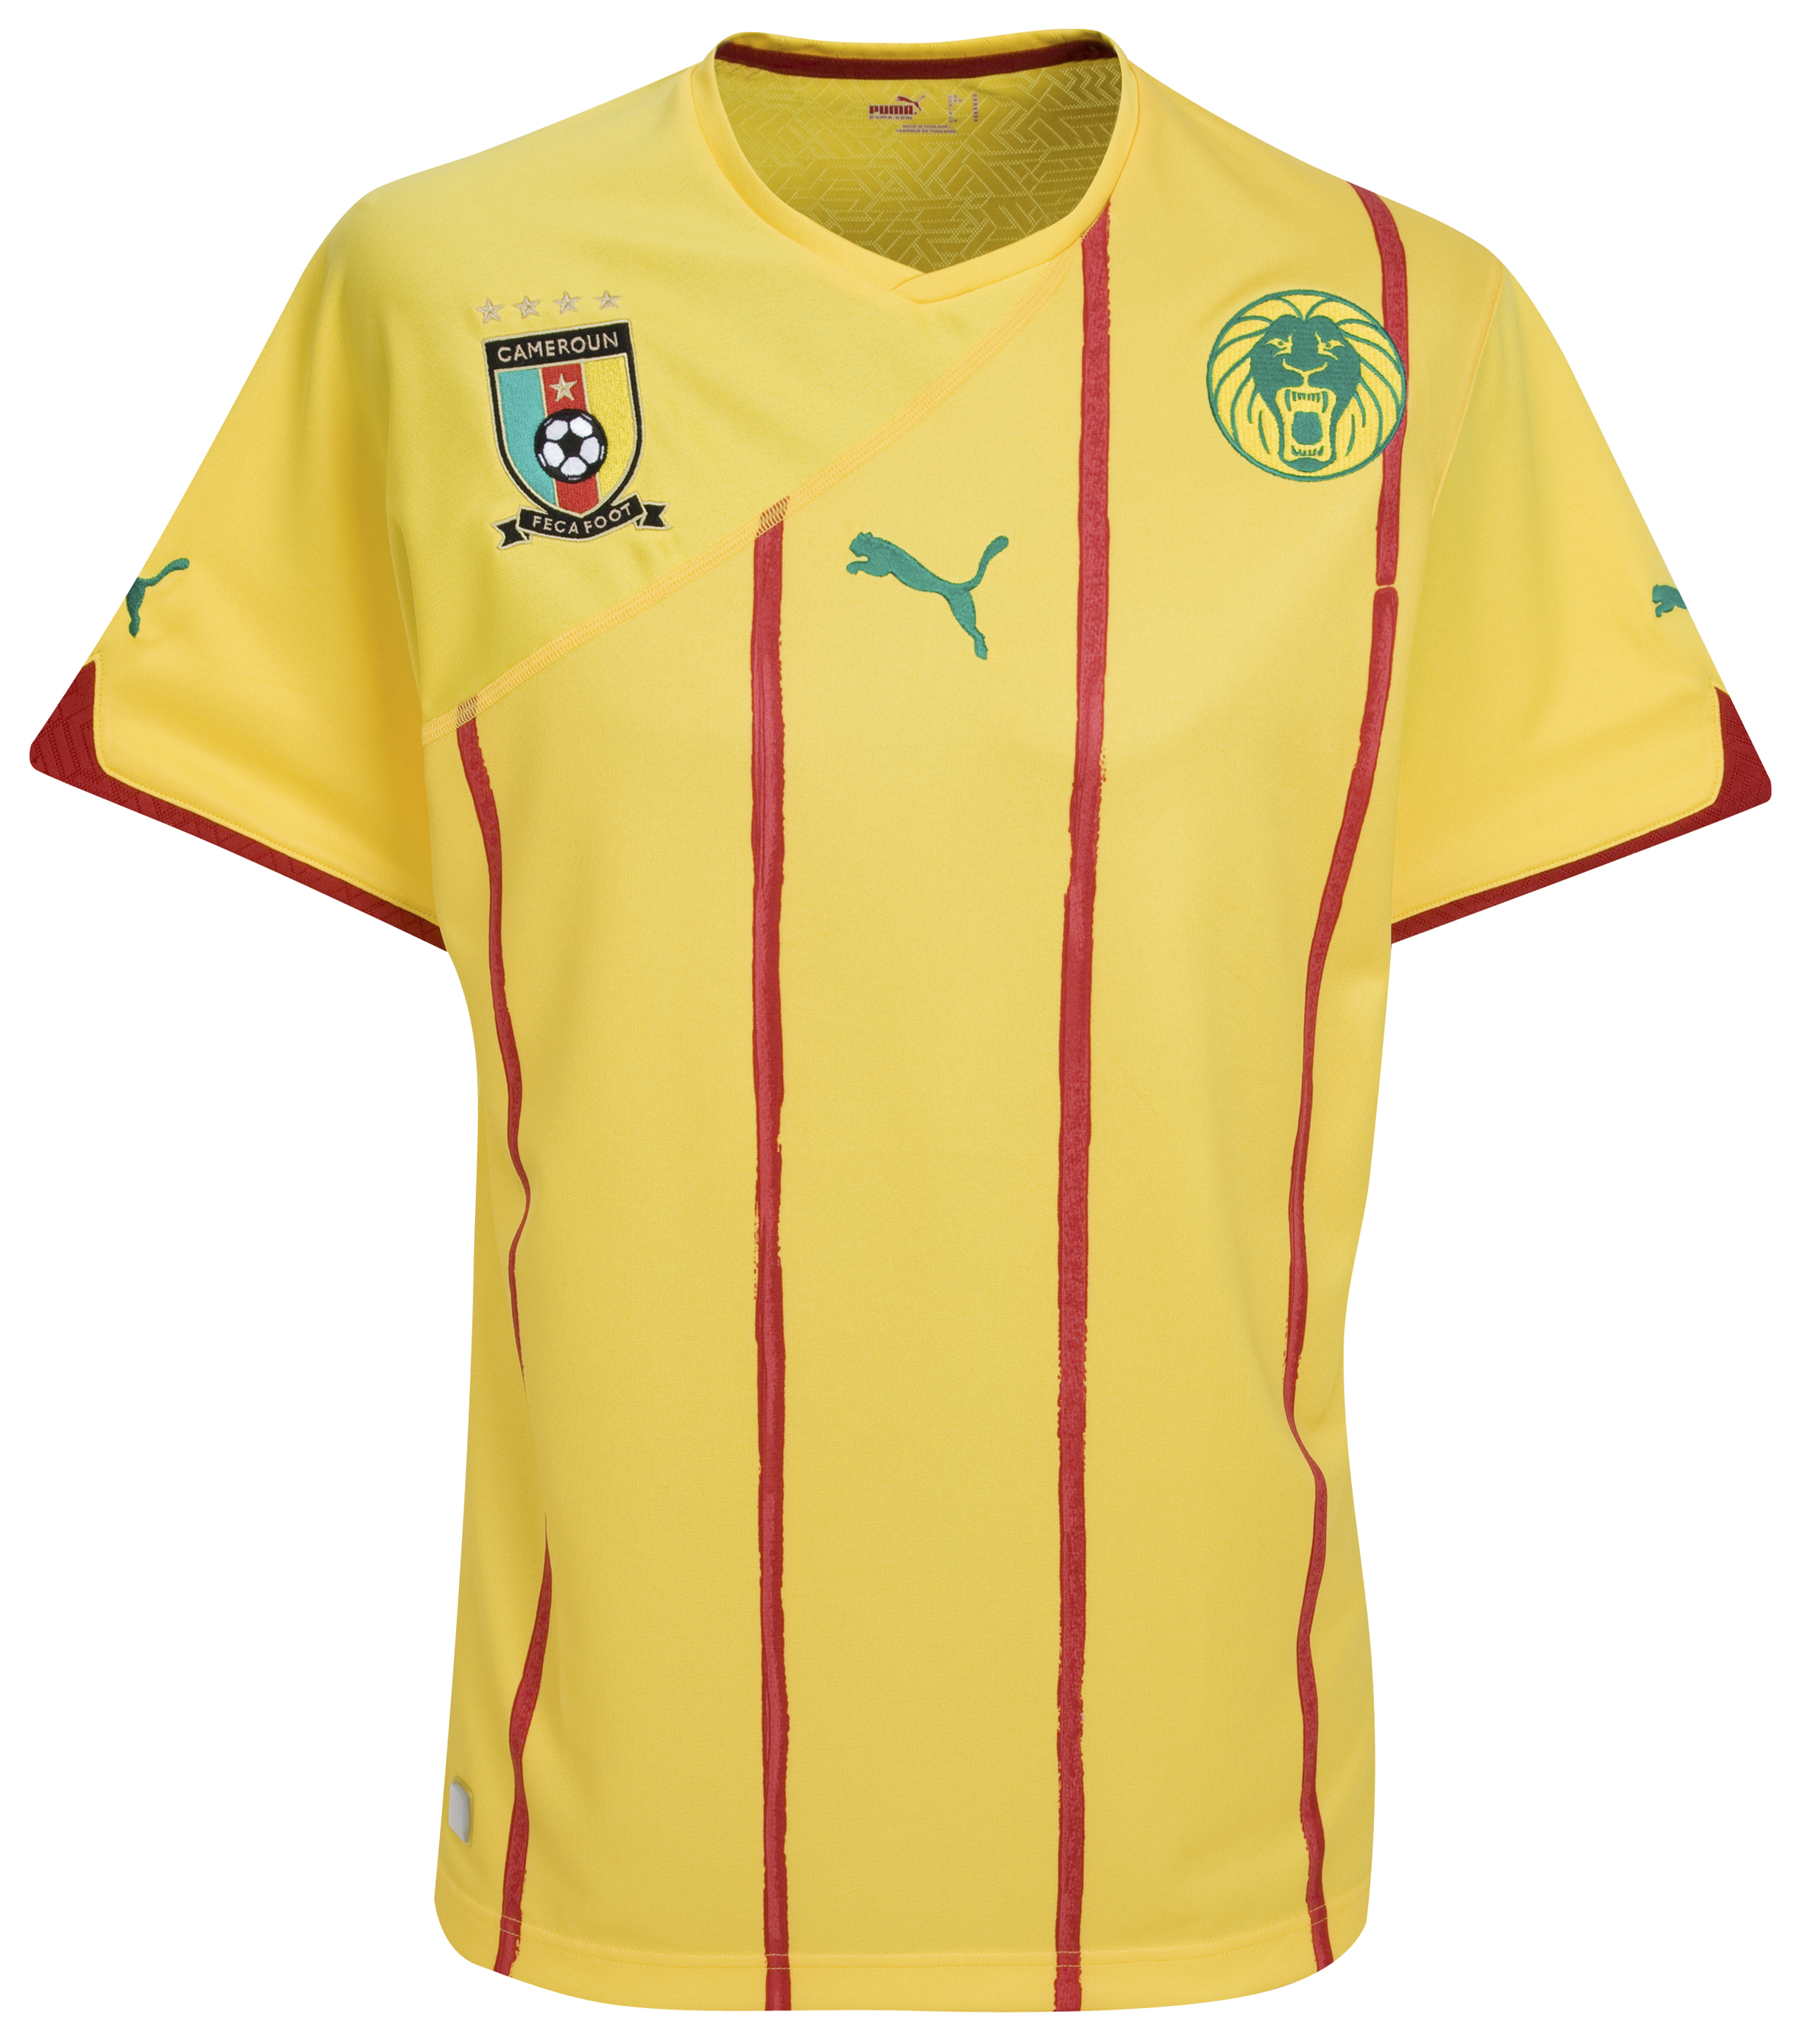 الملابس الخاصة بالمنتخبات في كأس العالم (جنوب أفريقيا 2010) Kb-60882